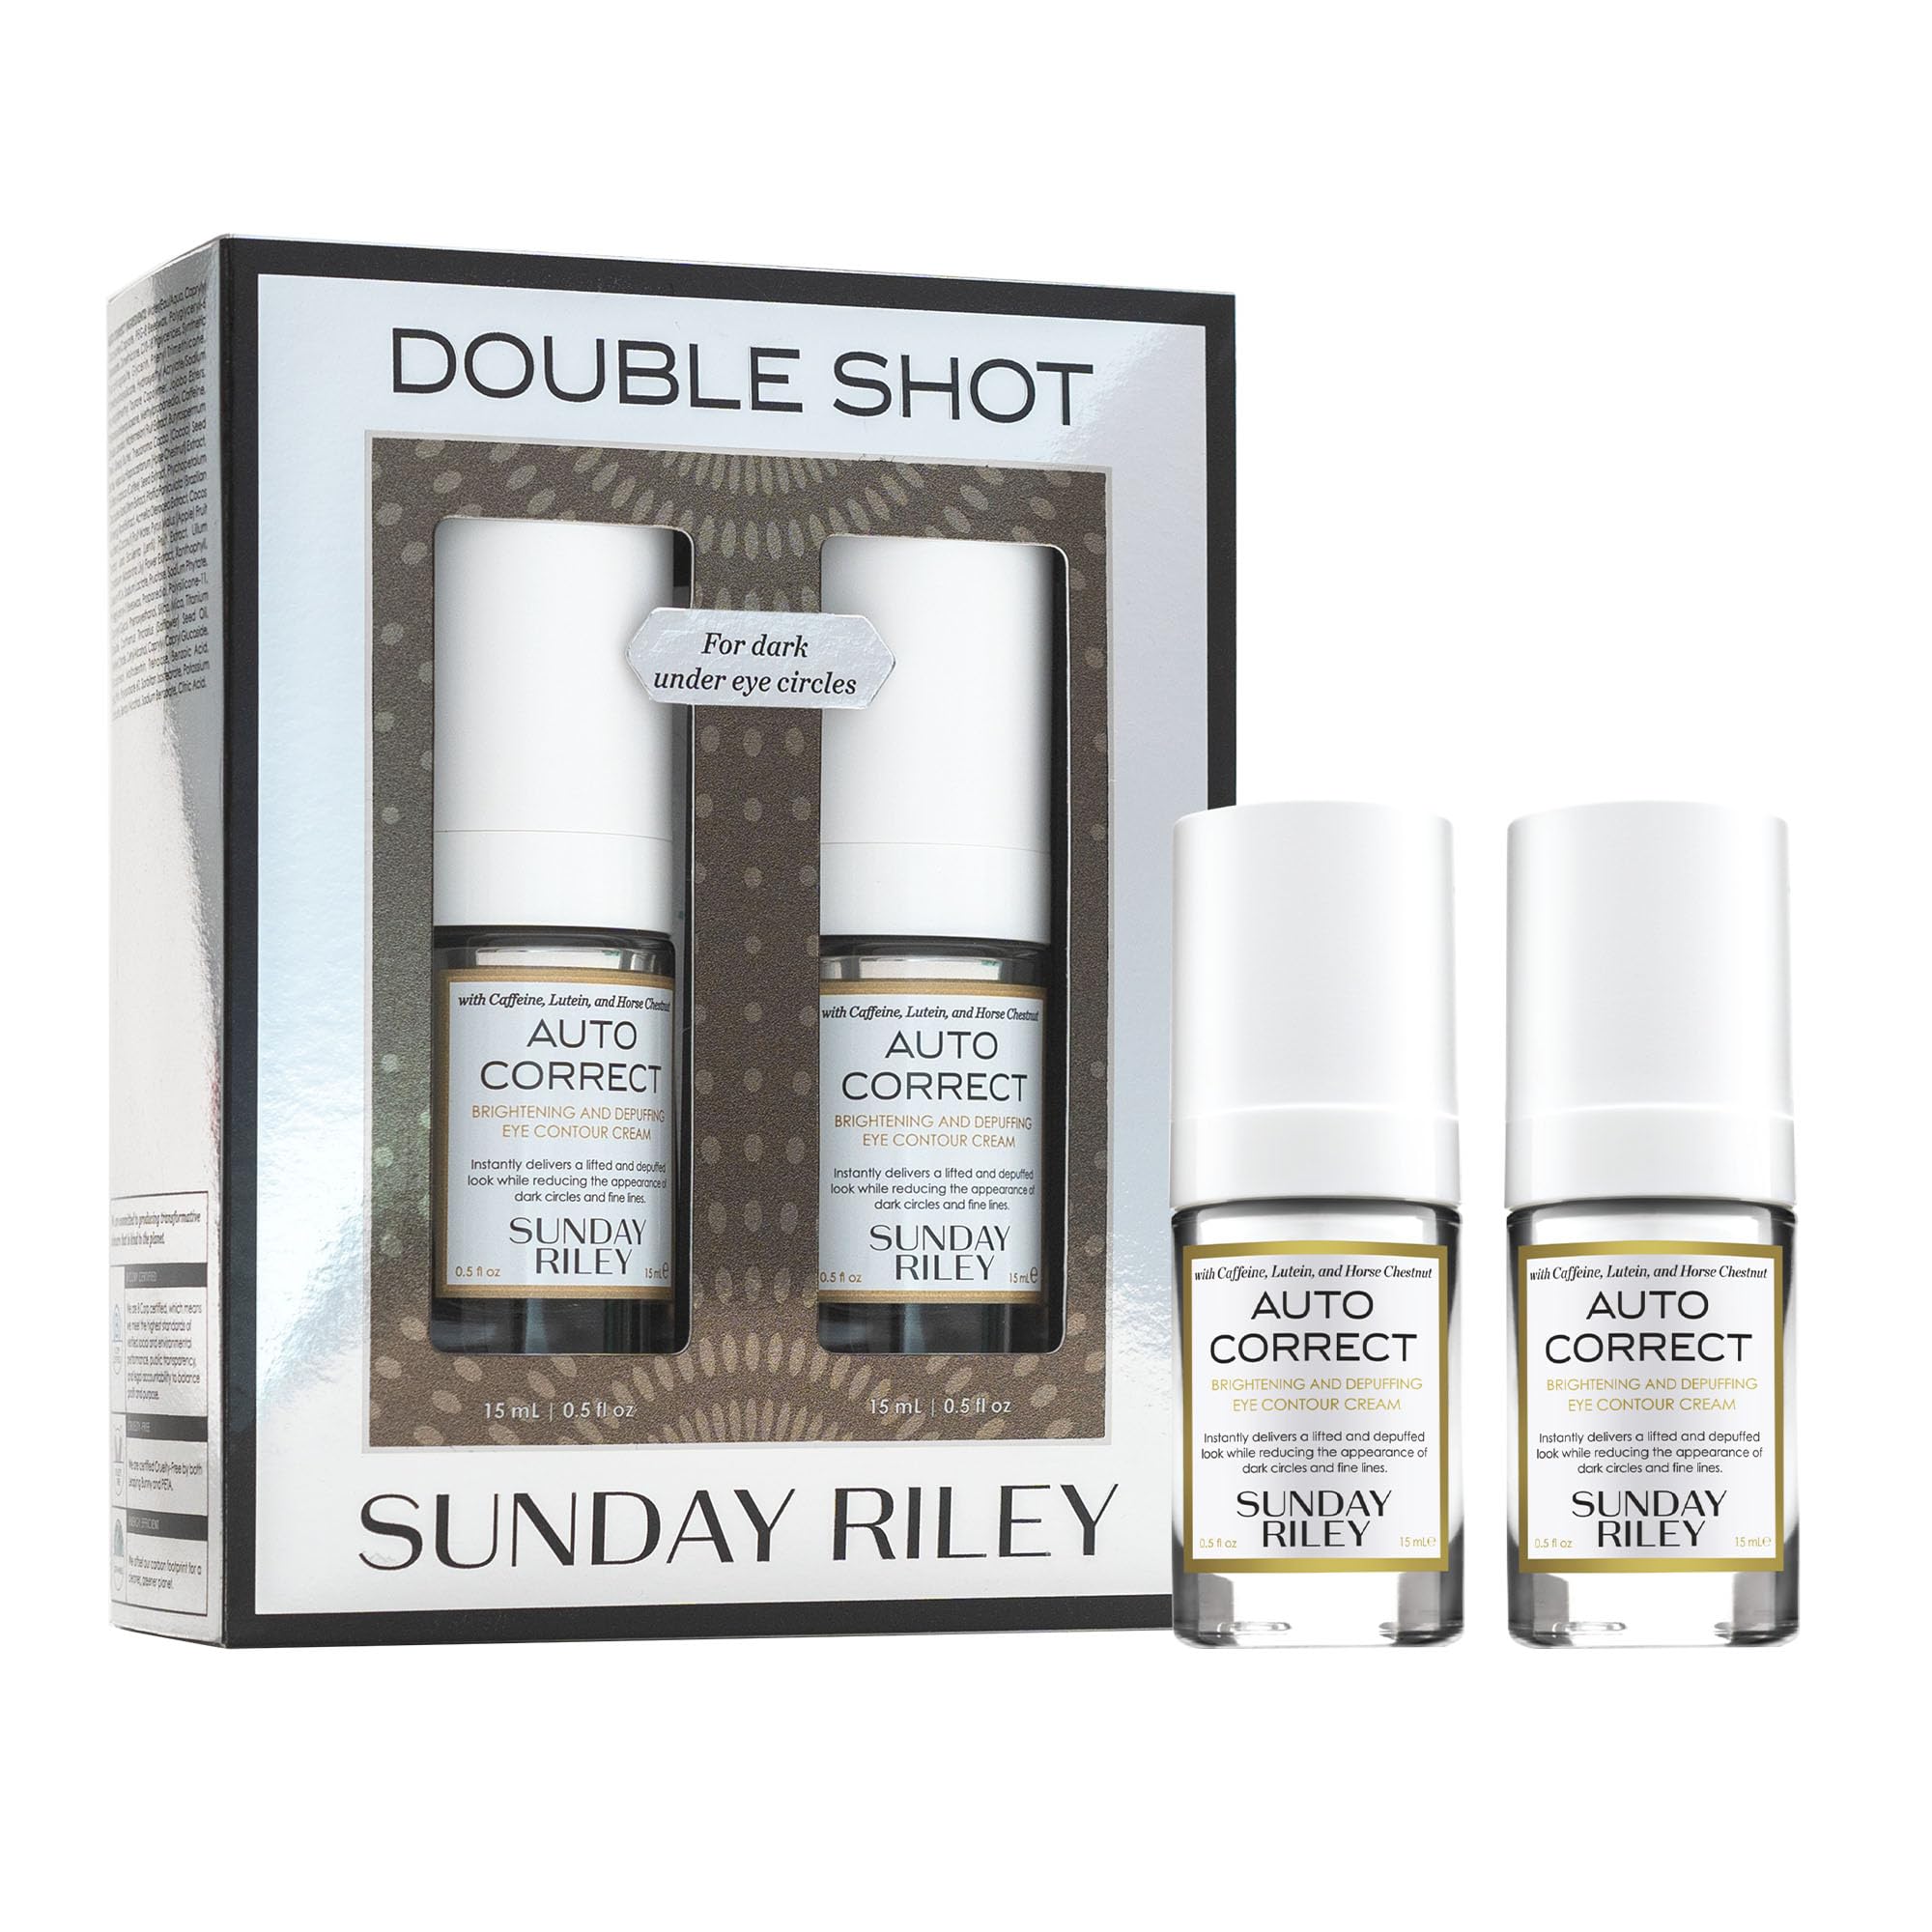 Sunday Riley Double Shot Auto Correct Eye Cream 0.5oz Duo Skincare Set